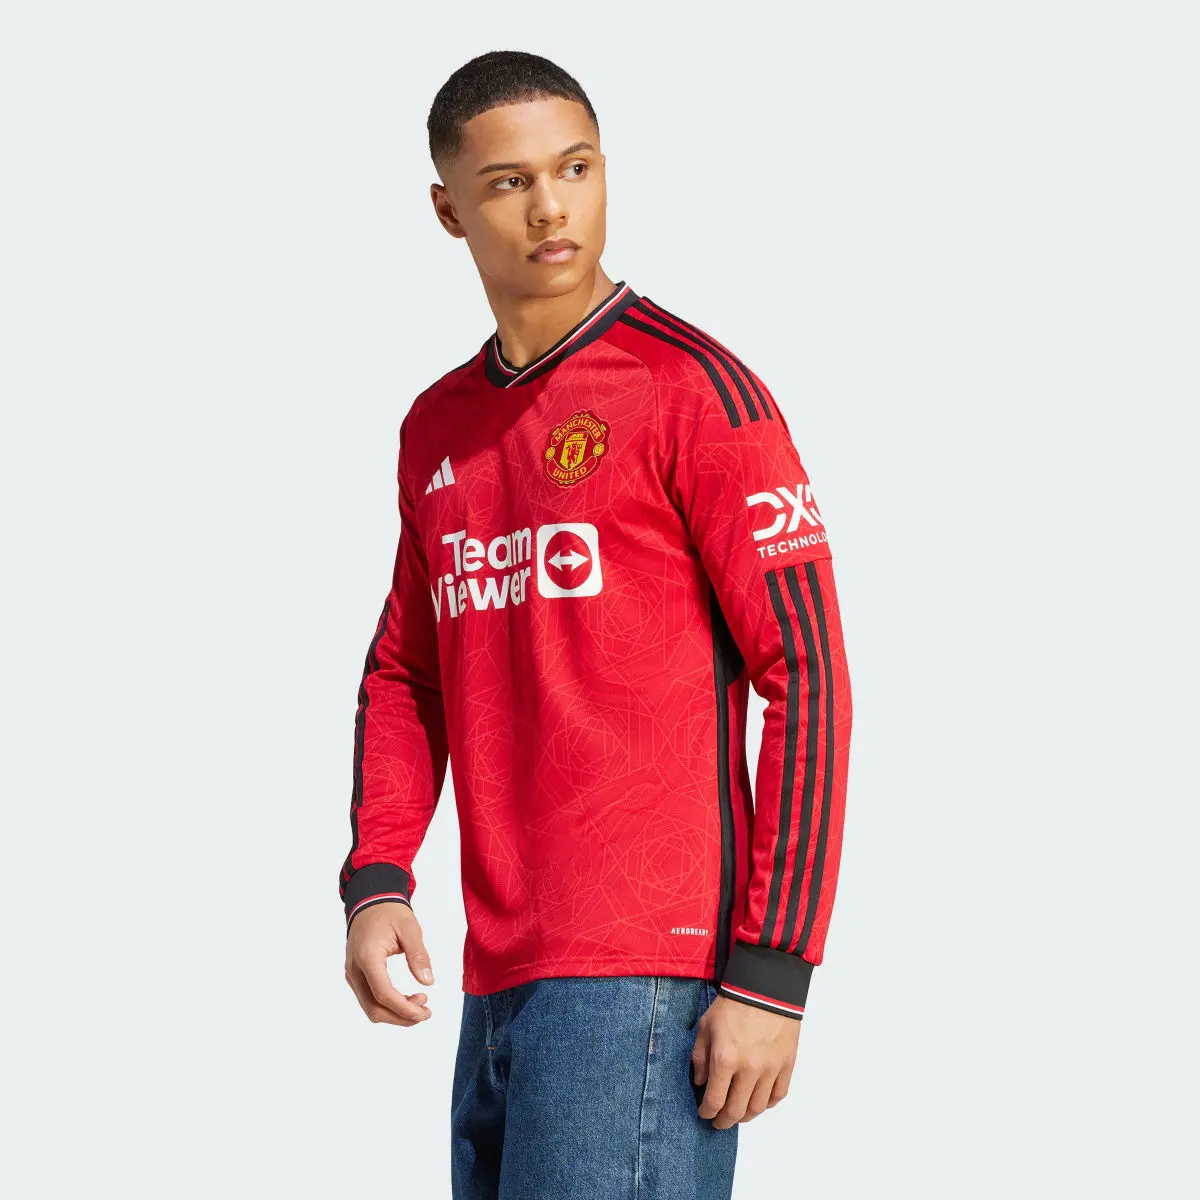 Adidas Camisola Principal de Manga Comprida 23/24 do Manchester United. 2